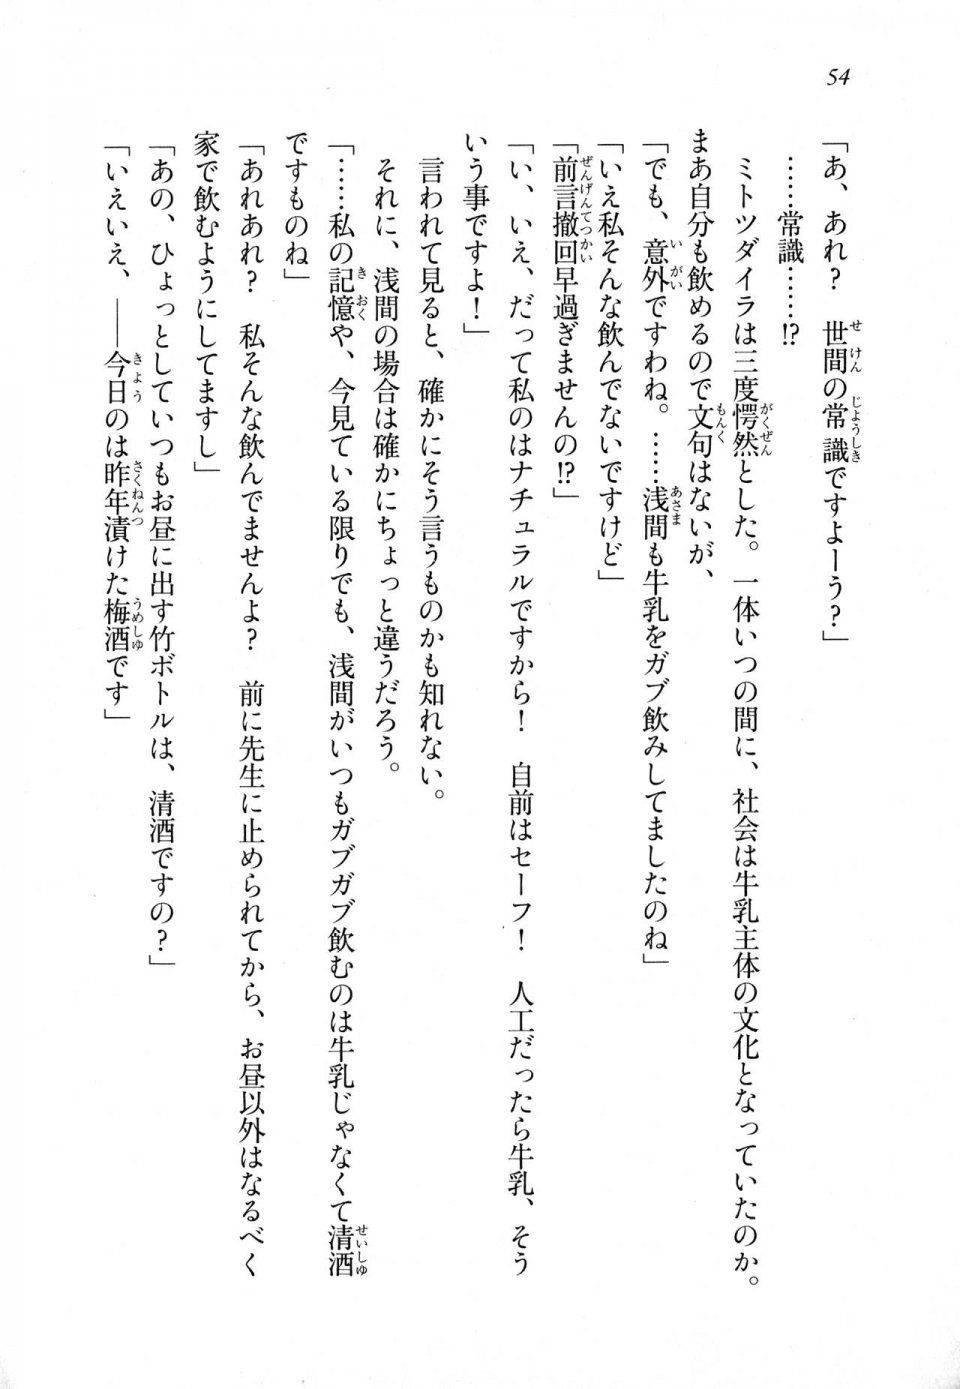 Kyoukai Senjou no Horizon LN Sidestory Vol 1 - Photo #52